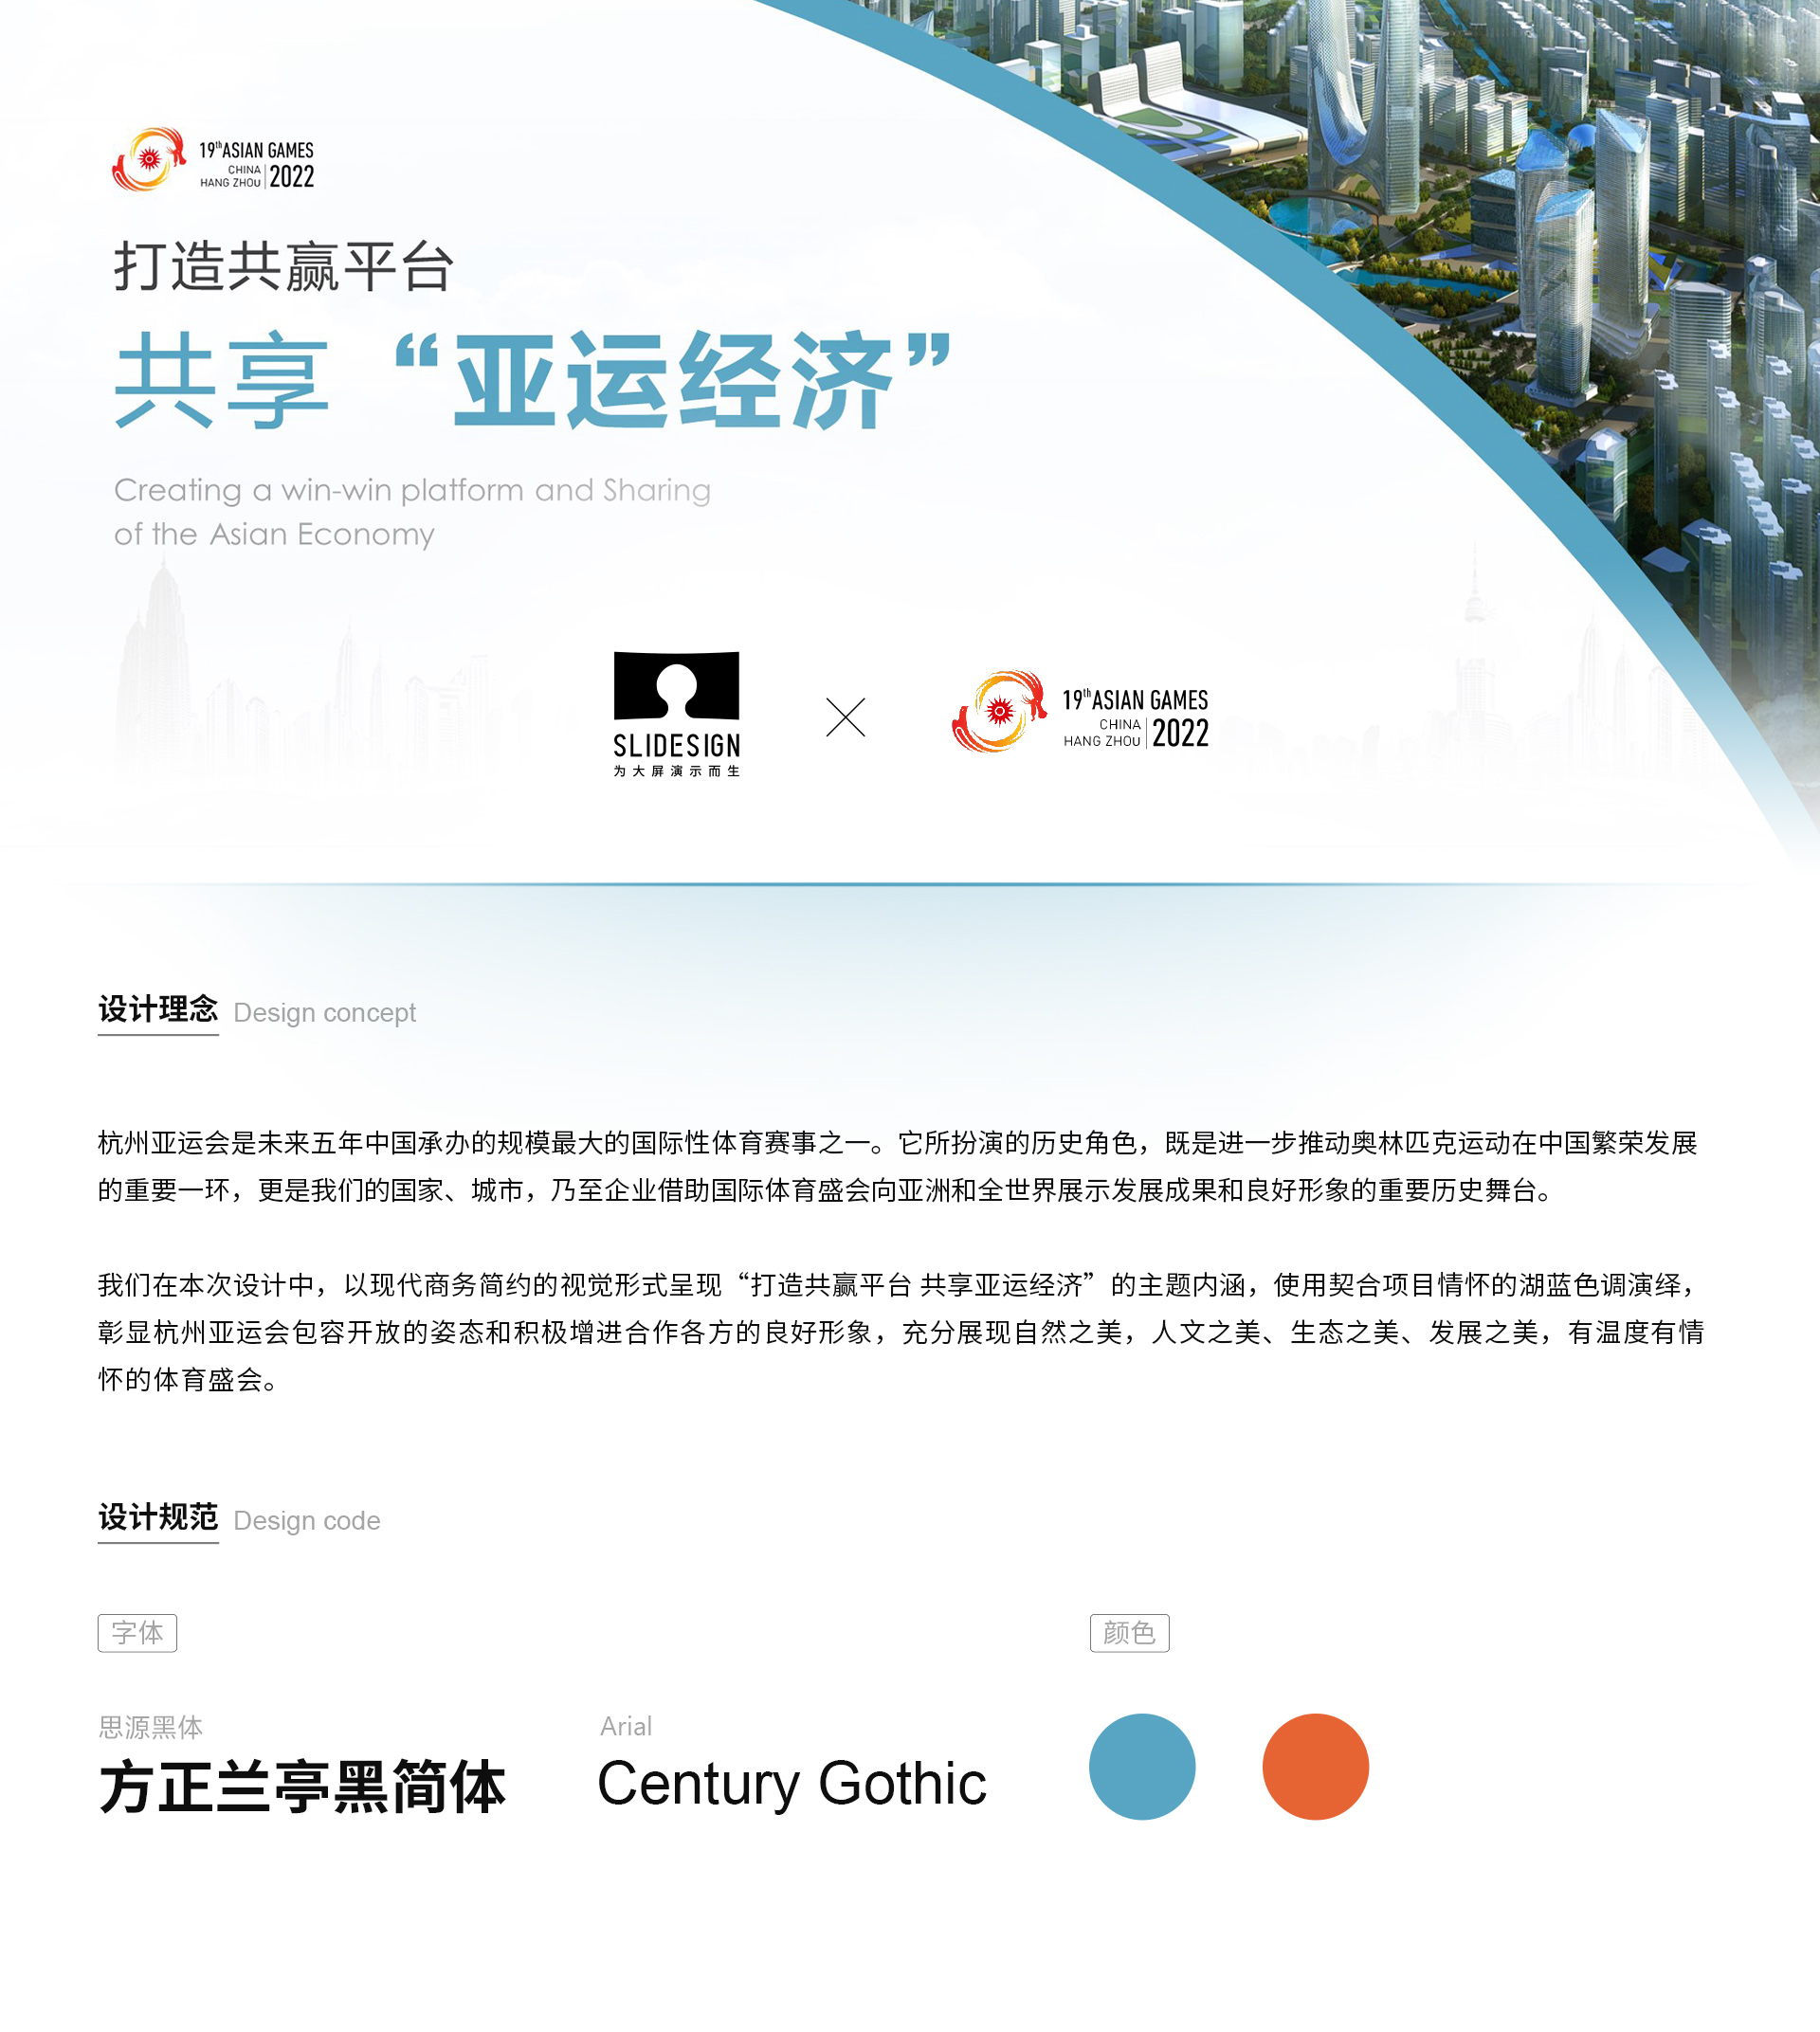 Jul10-杭州亚运会打造共赢平台 共享“亚运经济”头图.jpg